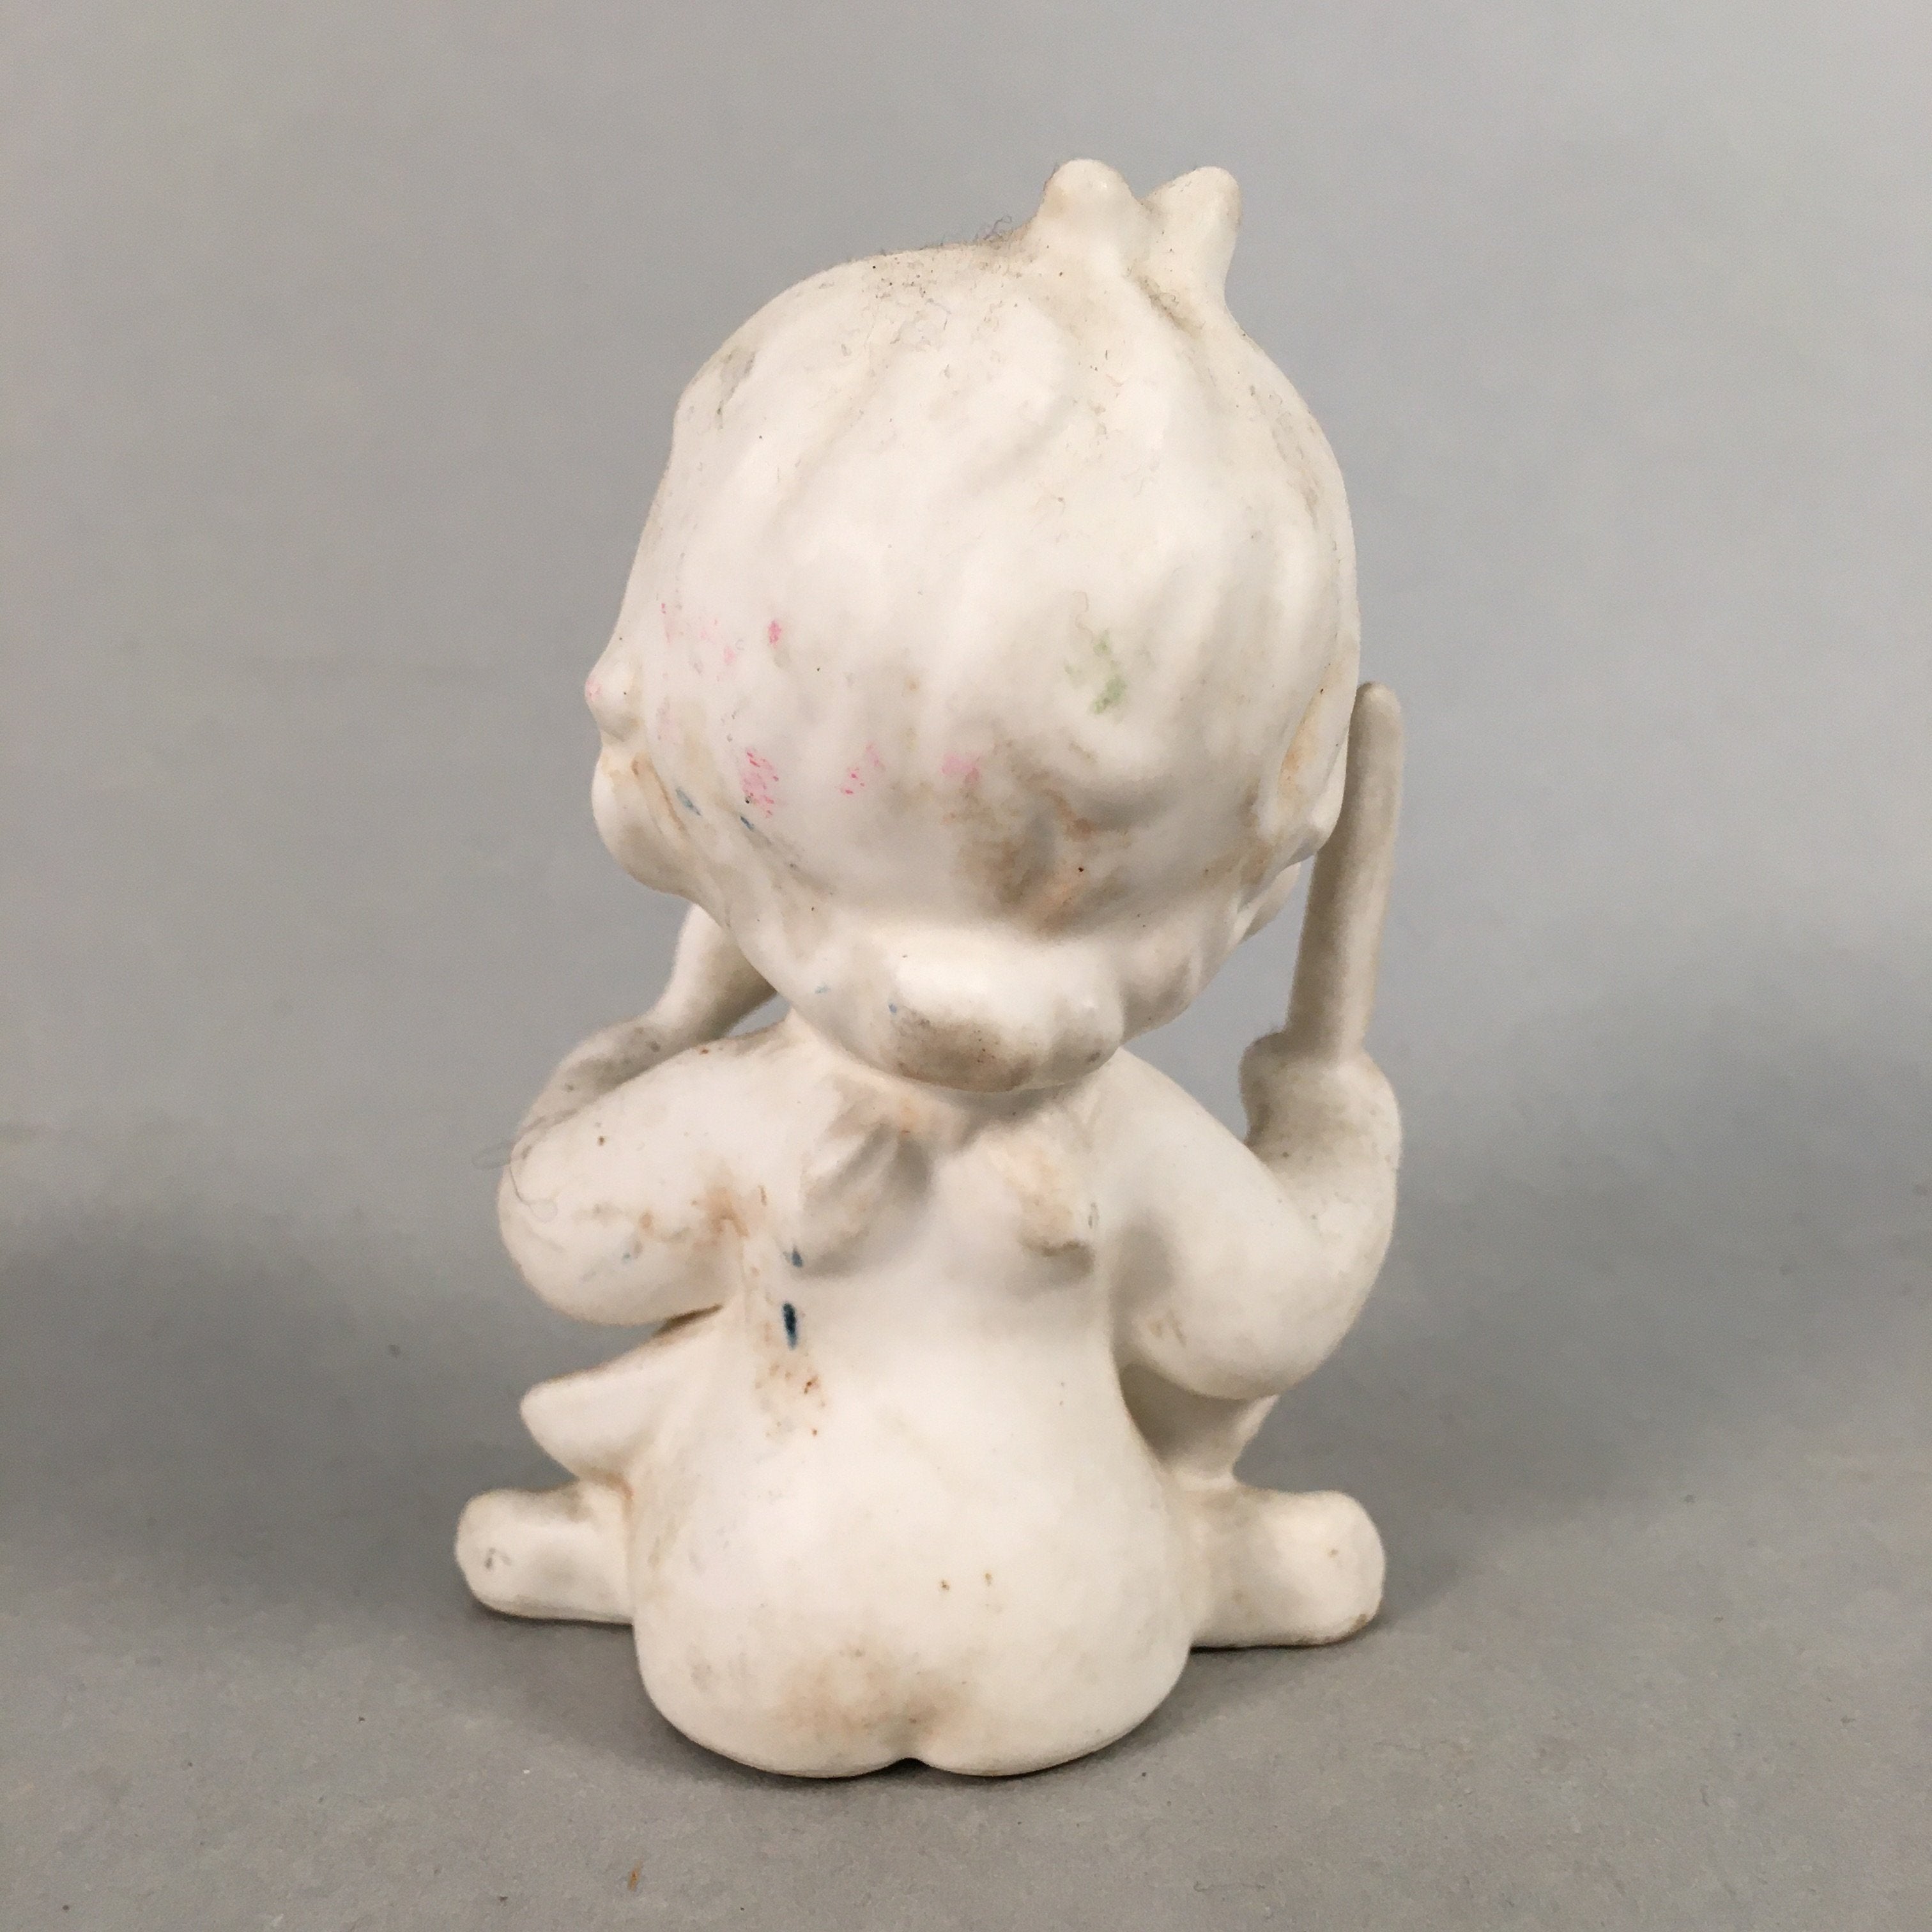 Japanese Kokeshi Doll Vtg Figurine Porcelain Baby Angel White KF526